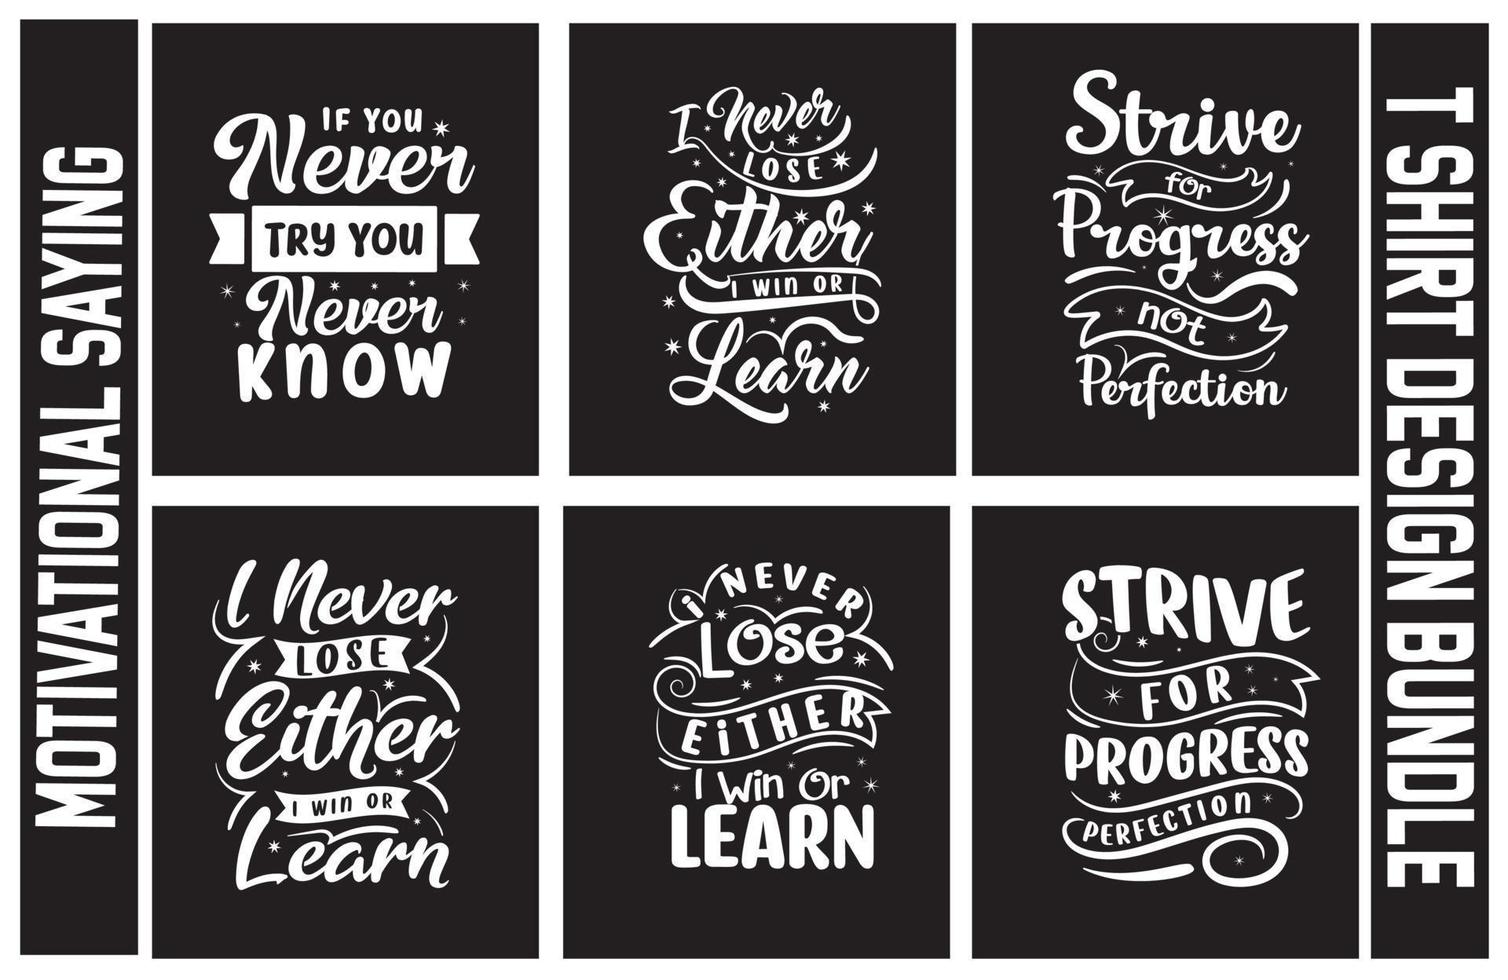 paquete de diseño de camisetas con letras, conjunto de diseño de camisetas con frases motivacionales, paquete de diseño de camisetas con tipografía vector